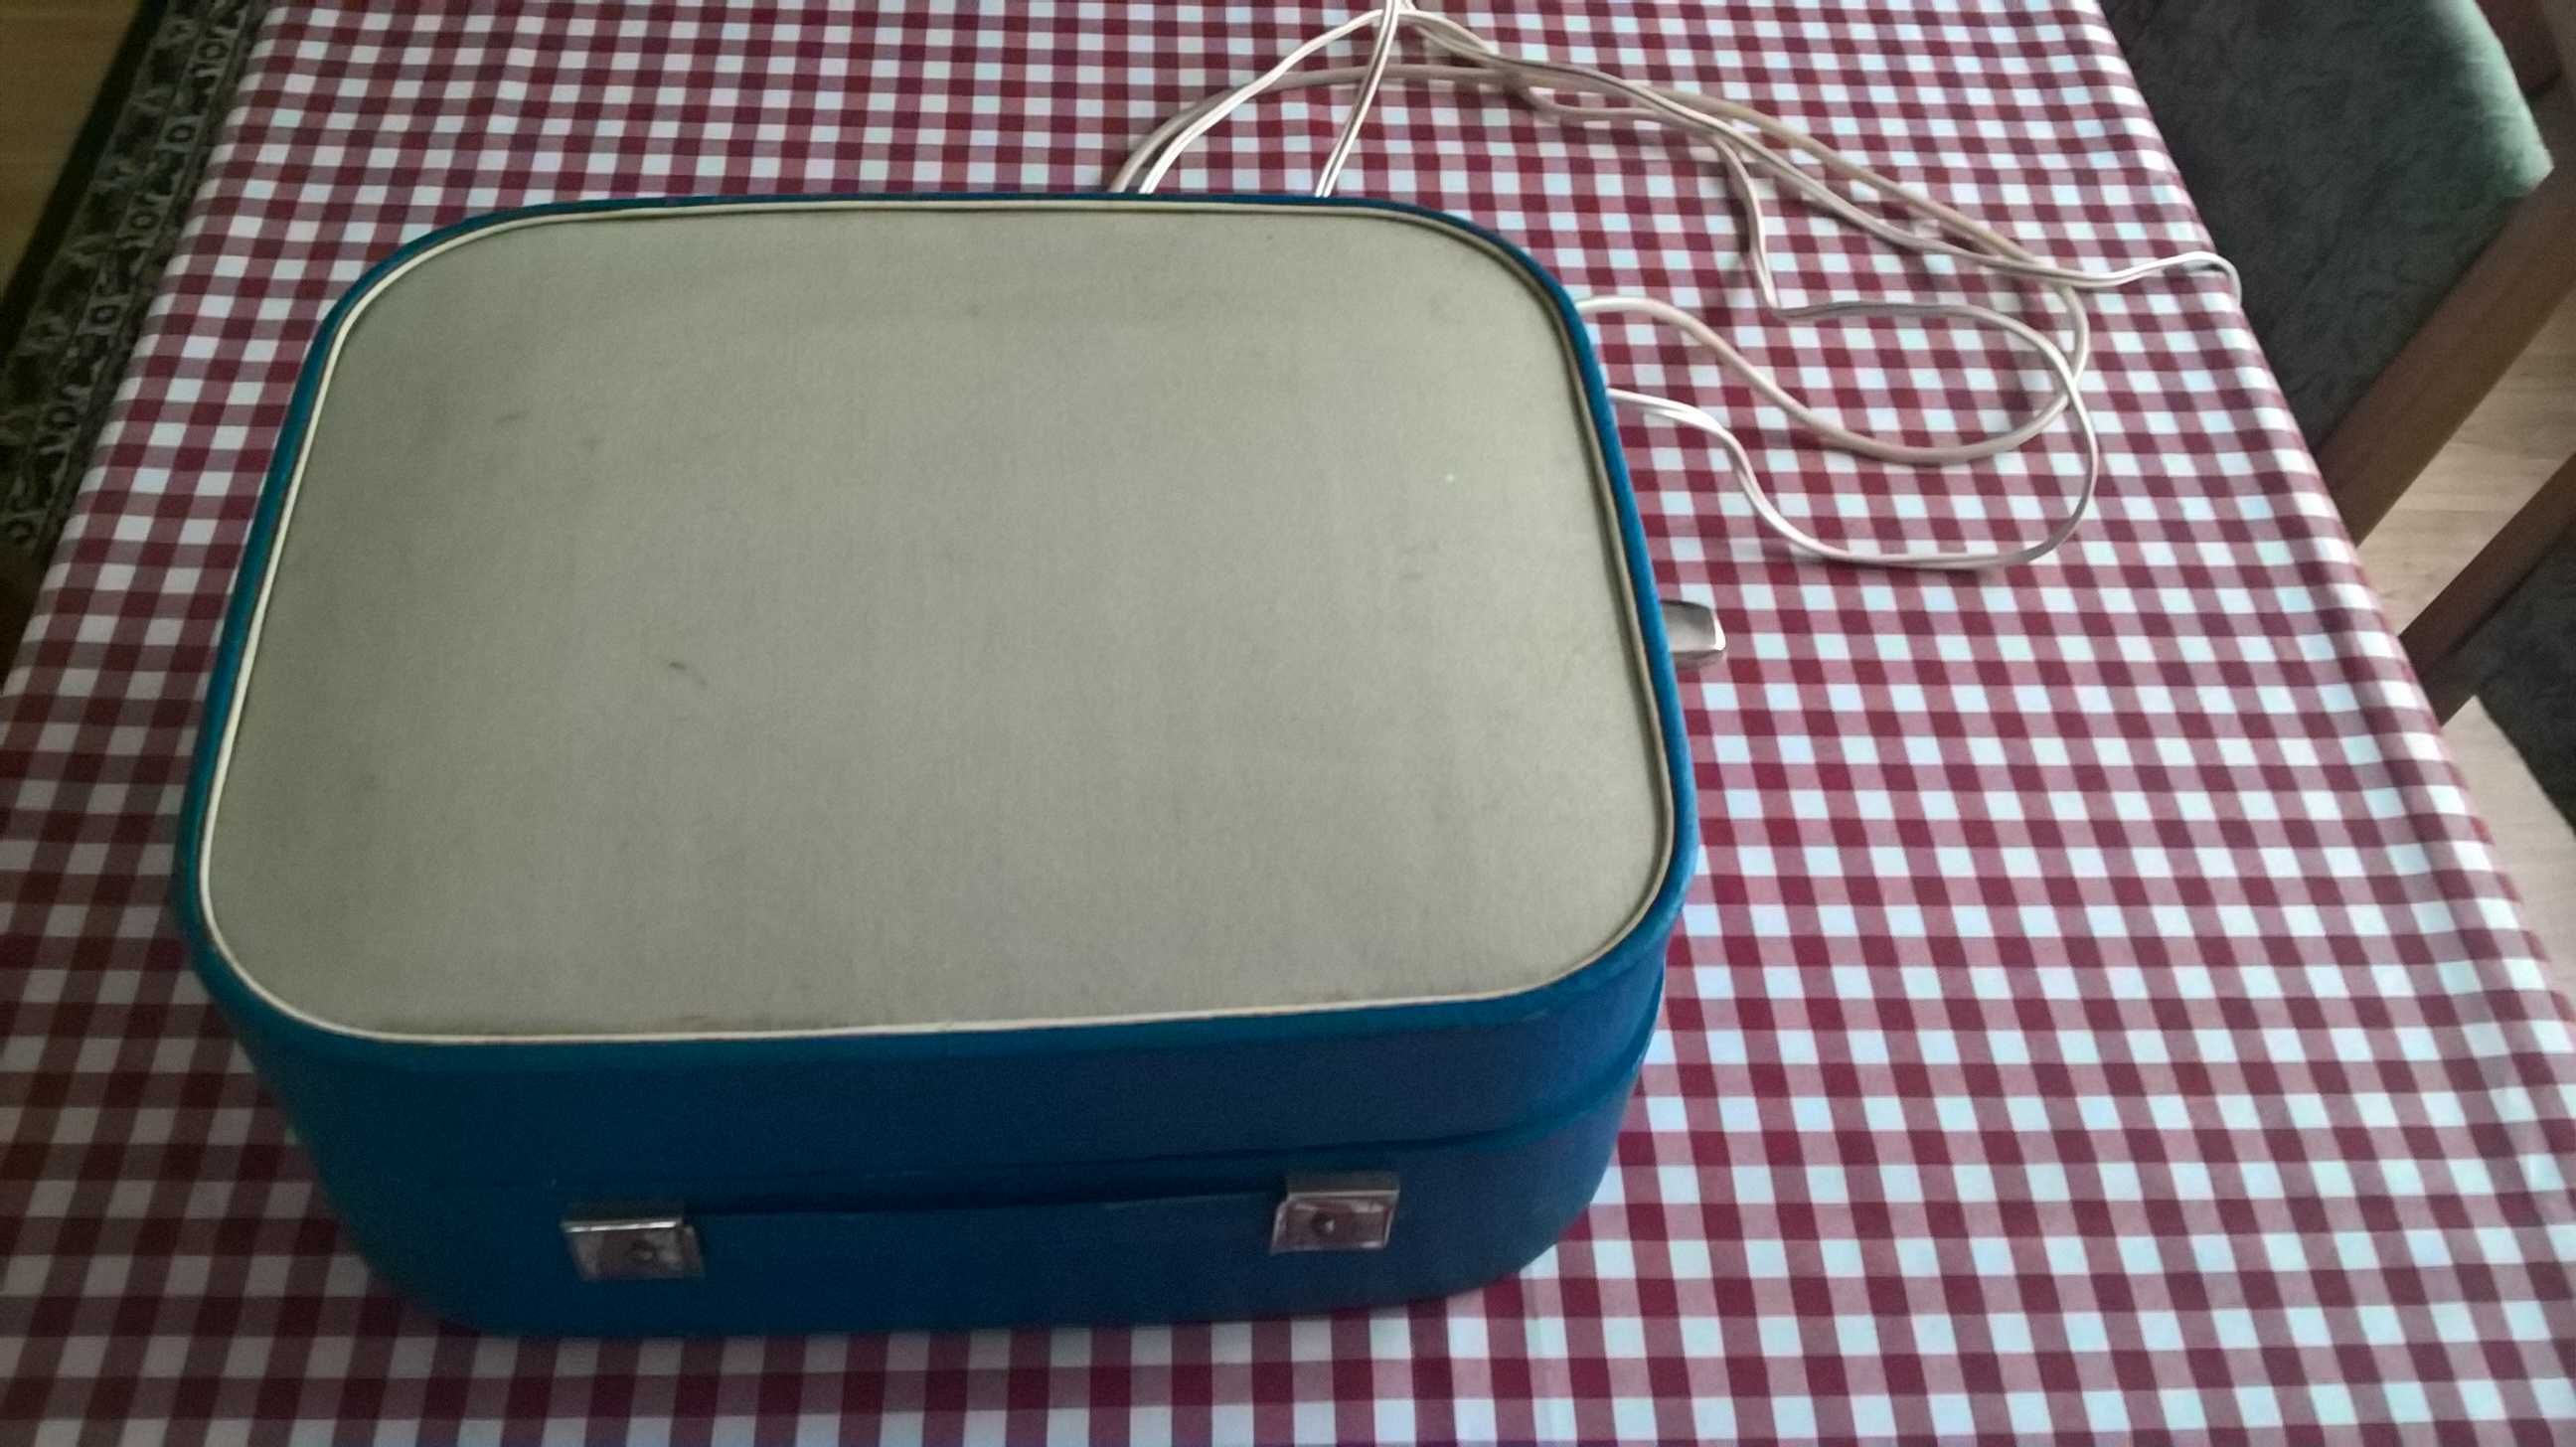 Gramofon, adapter walizkowy Fonica